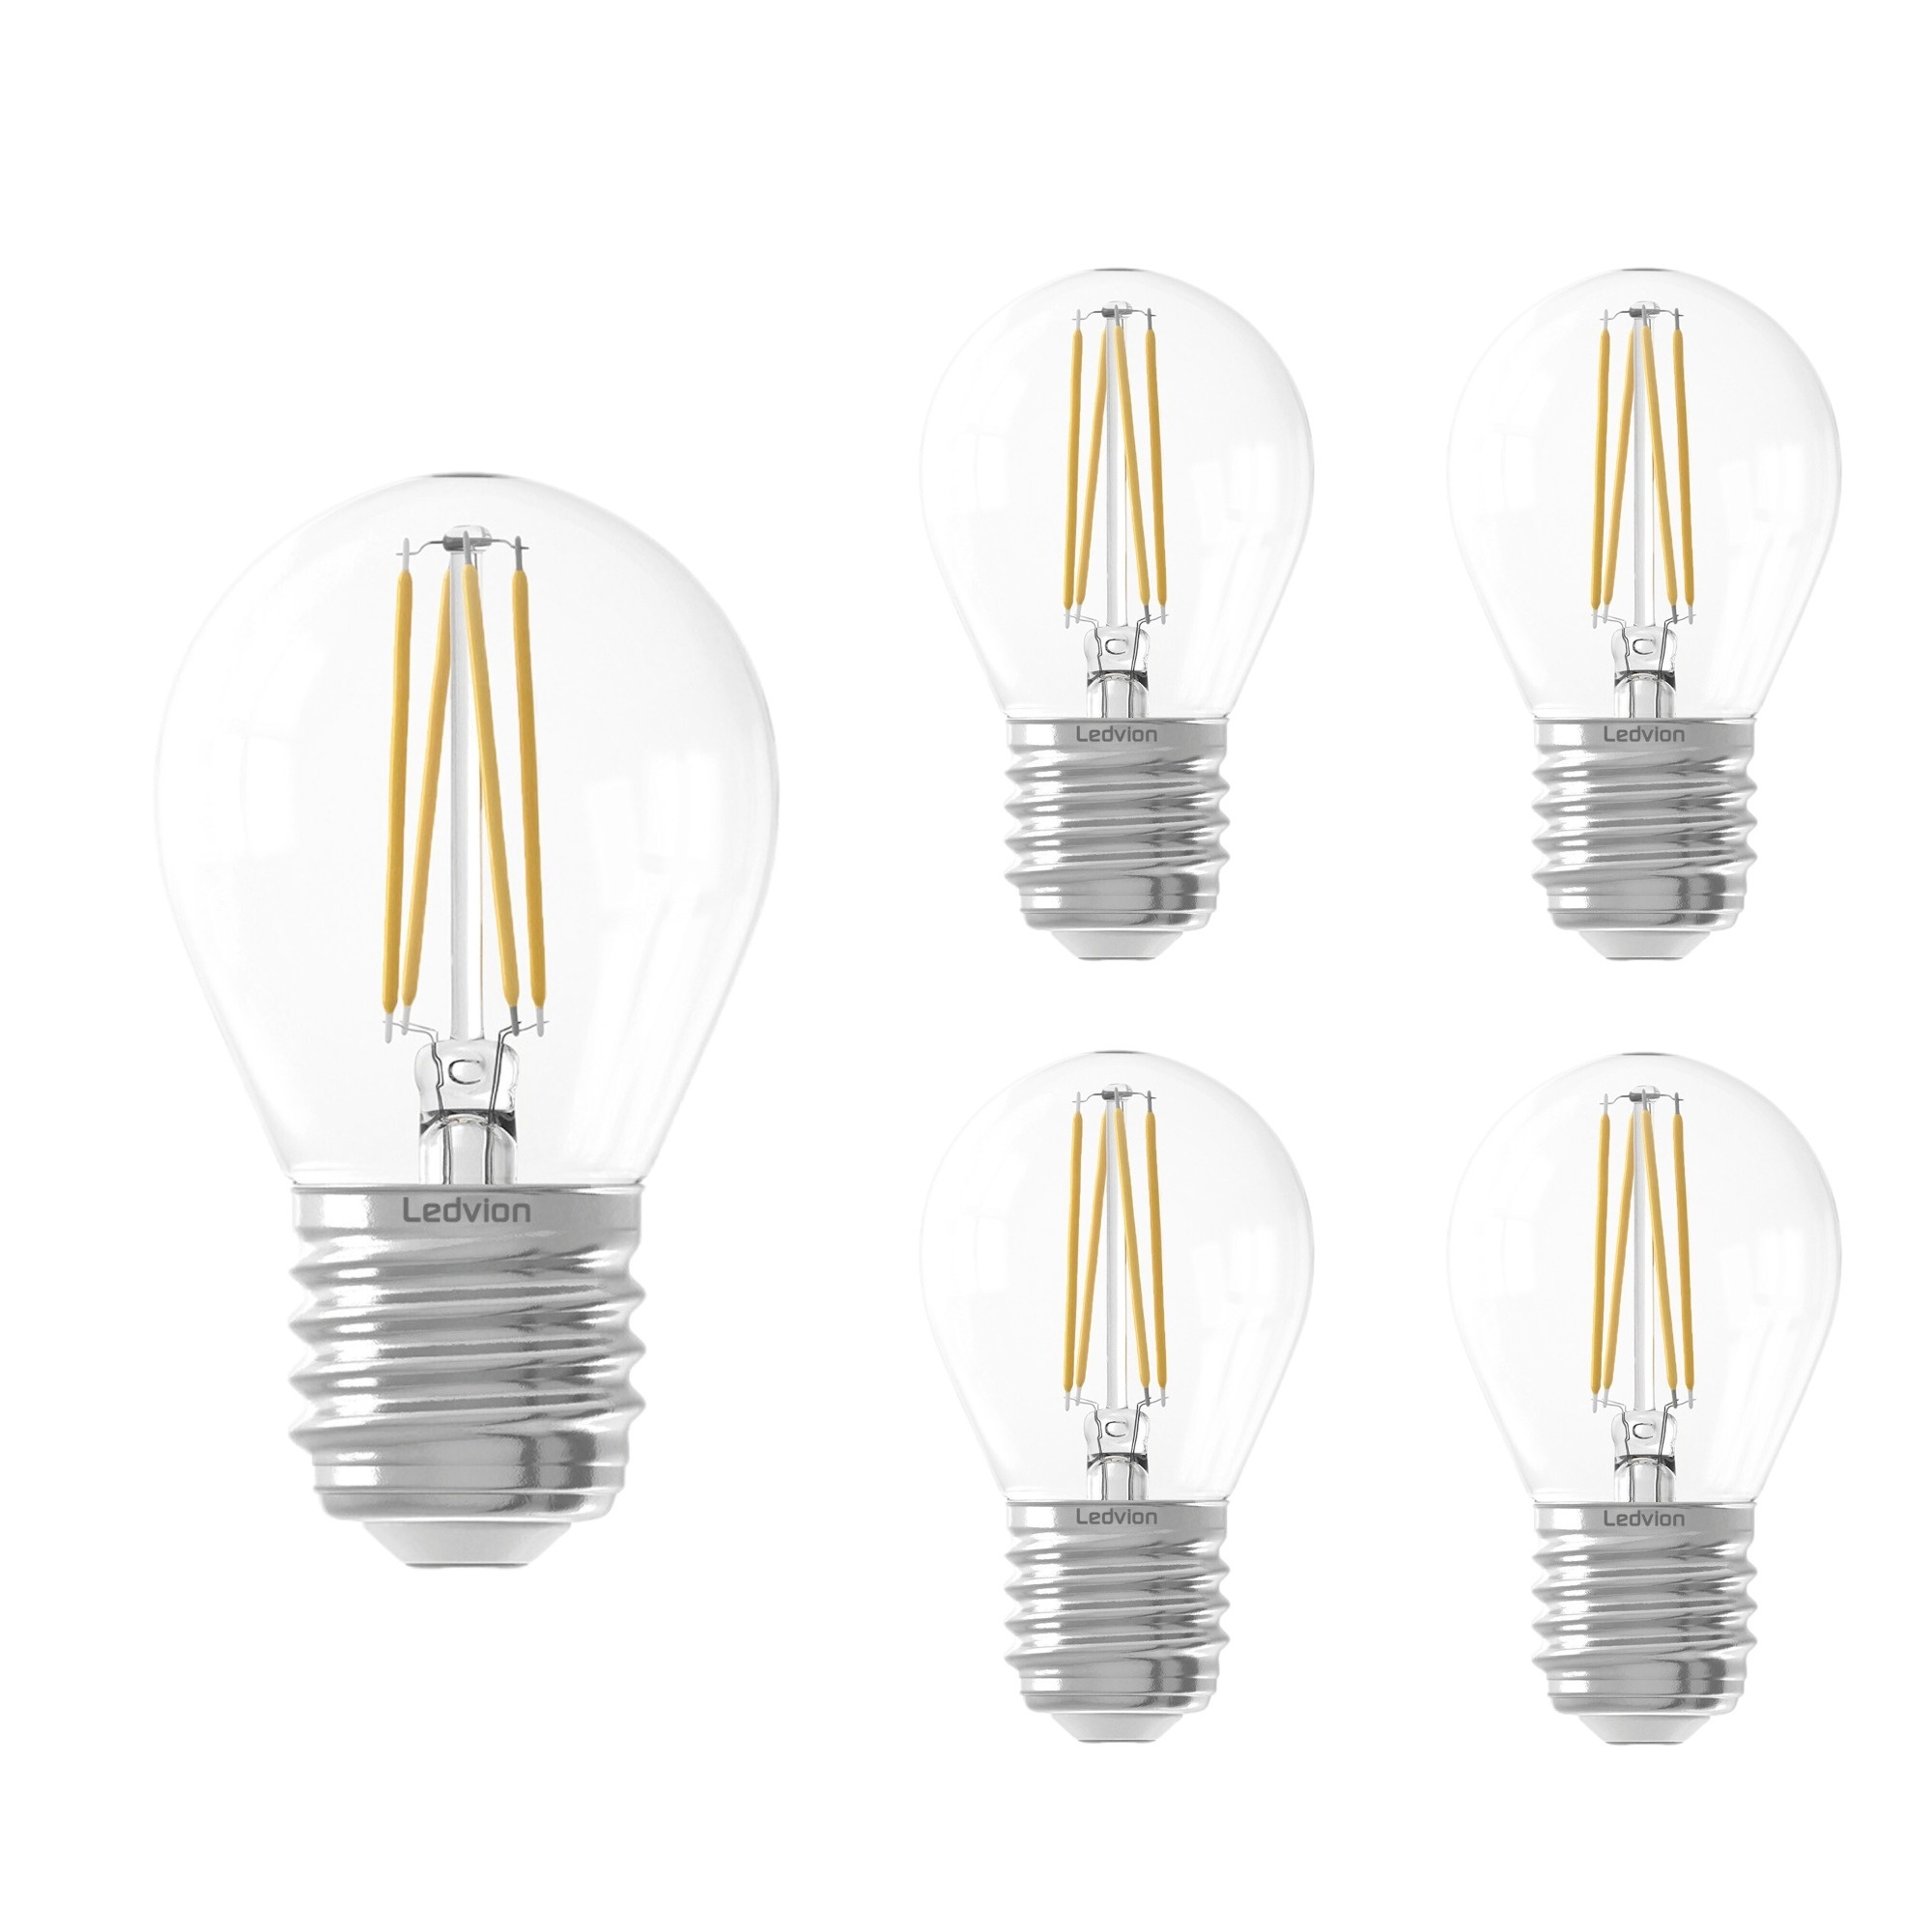 Ampoule LED Ledvion E27 - Dimmable - 4.5W - 2100K - 470 Lumen - Lampesonline